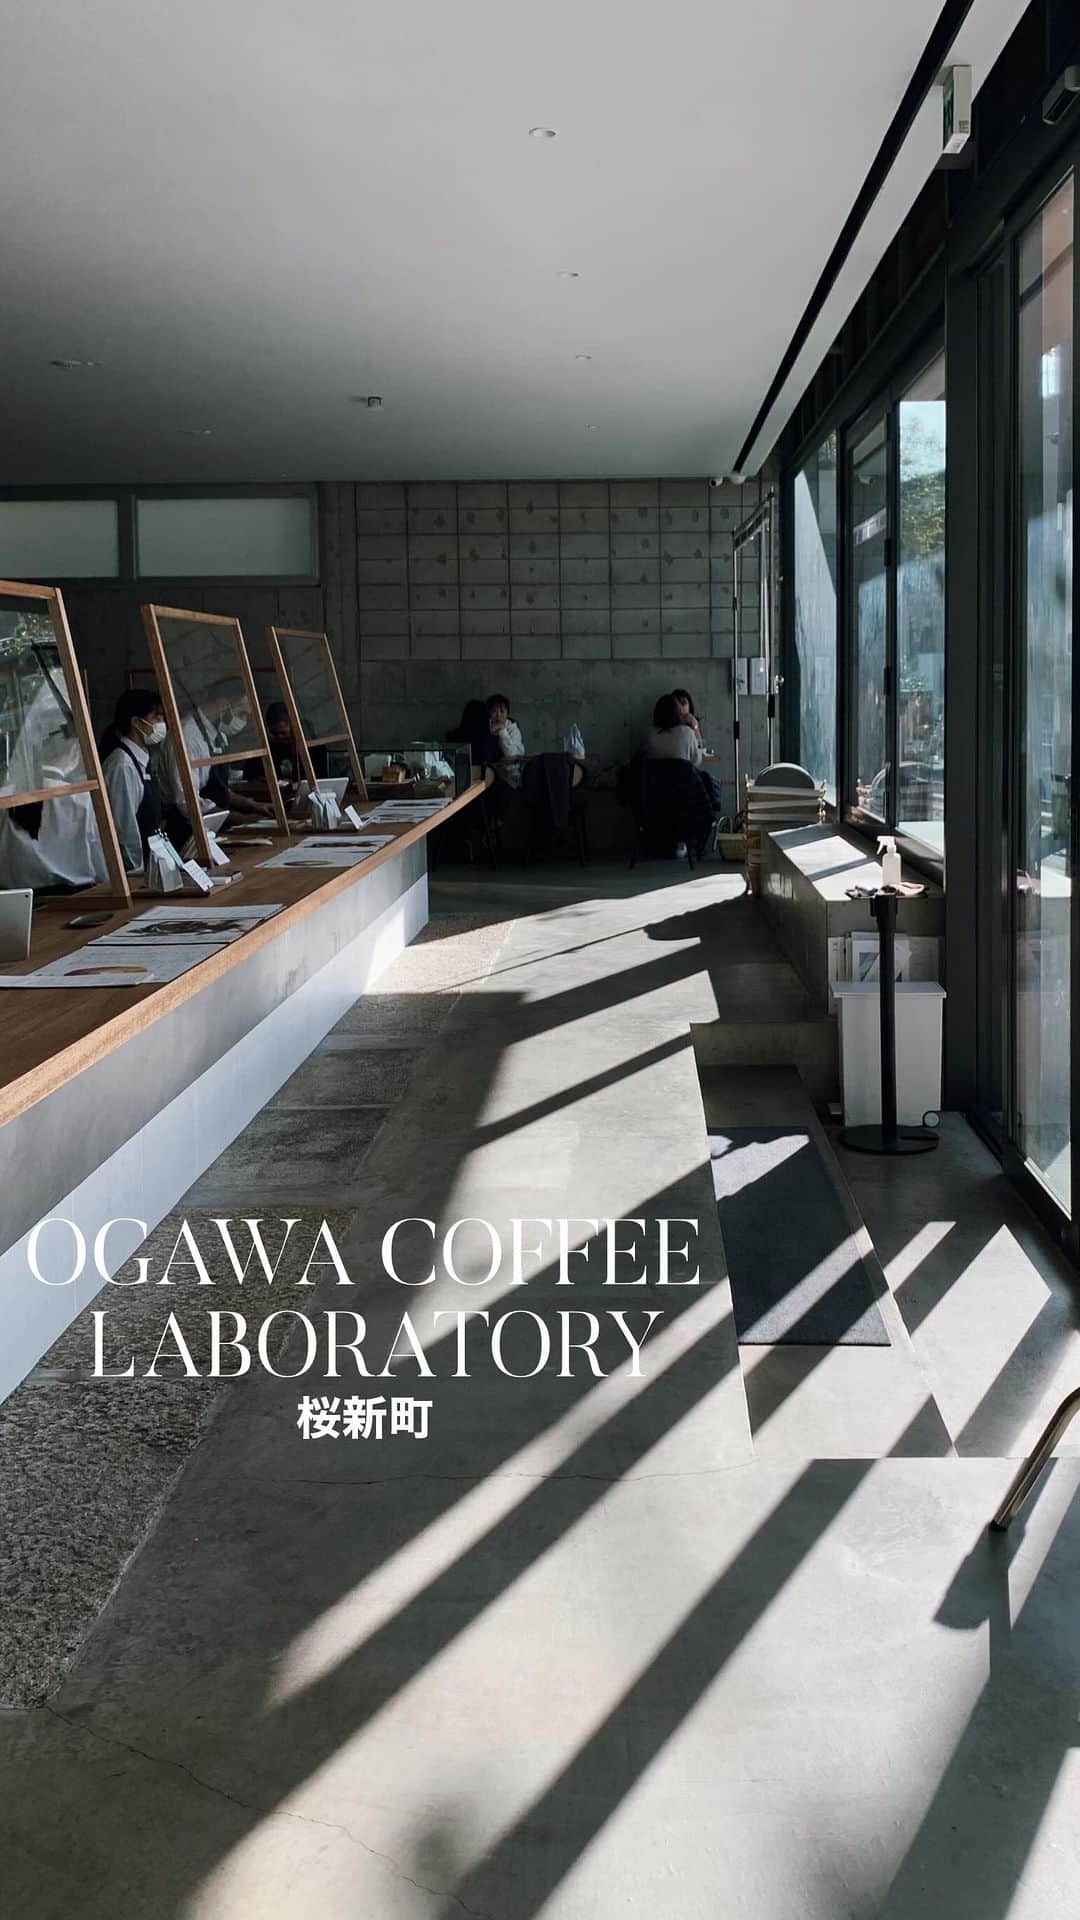 C A F E L O V E Rのインスタグラム：「OGAWA COFFEE LABORATORY//桜新町 京都発のコーヒーロースター☕️ 味わえるコーヒーはなんと常時21種類以上あり迷ってしまいますが、 その日の気分や食事に合うコーヒーをバリスタさんがおすすめしてくれるので 行くたびに色々なコーヒーを楽しむことができます🍵 フードやデザートのメニューも豊富で、ランチ、ディナーはコースメニューもあり🍴🧁  営業時間は7:00-22:00なので幅広い時間帯に利用したくなるお店です✨ 人気店なので予約がおすすめ！  -————————————  ◼︎オーダー(lunch time) ・ホタテとムール貝のパイ詰め 炭焼き野菜とサラダ添え(スープorパン付き)  ドリンクセット ¥1750  ・豚ロースの炭火焼き ジンジャーオニオンソース 焼き野菜添え (ライスorパン付き) ドリンクセット ¥1650   ㅤ ◼︎広さ 店内は広めで複数人の利用も◯ お子様連れにも優しく、ベビーカーの入店もOK👶🏻行くとお子様連れの方をよくお見かけするので、子連れでも気兼ねなくいられます おひとりさま(カウンター席あり)、お友達やカップル、ファミリーまで、さまざまな方におすすめ  ◼︎テイクアウト ◯ ㅤ ◼︎キャッシュレス クレジットカード、QRコード決済、電子マネー(交通系電子マネー・iD) ◯  ◼︎最寄駅 桜新町駅徒歩3分 ㅤ  -———————————— ㅤ @ogawacoffee_laboratory #OGAWACOFFEELABORATORY #オガワコーヒーラボラトリー ㅤ ※営業状況やメニューなど詳細は、 各アカウントでご確認ください  #_cafelover_デザートカフェ #_cafelover_サンドウィッチカフェ」